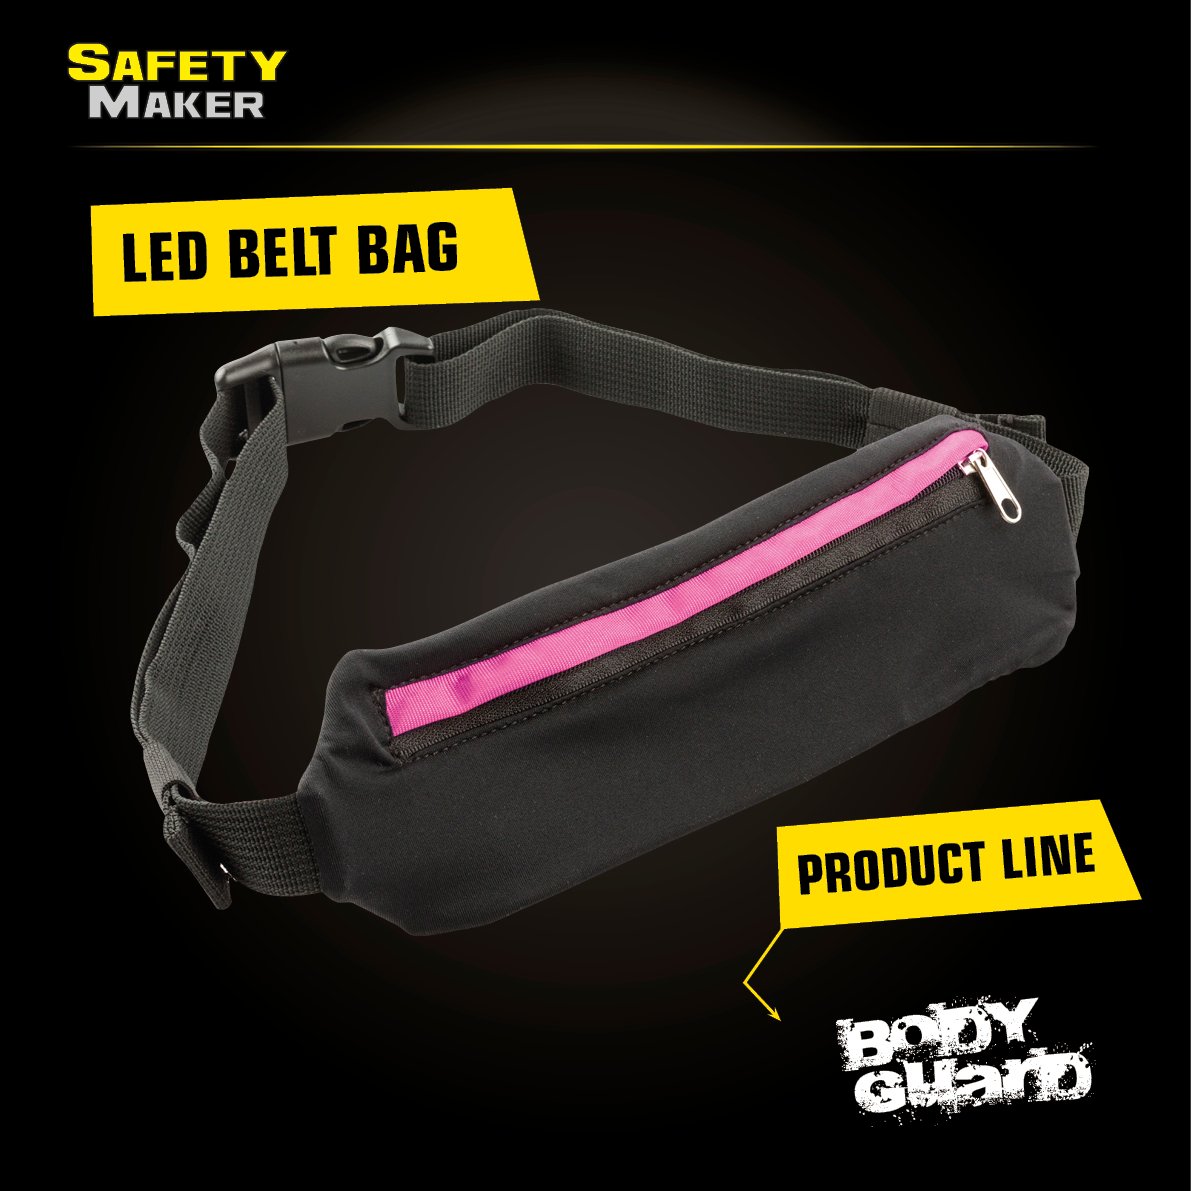 LED belt bag black pink